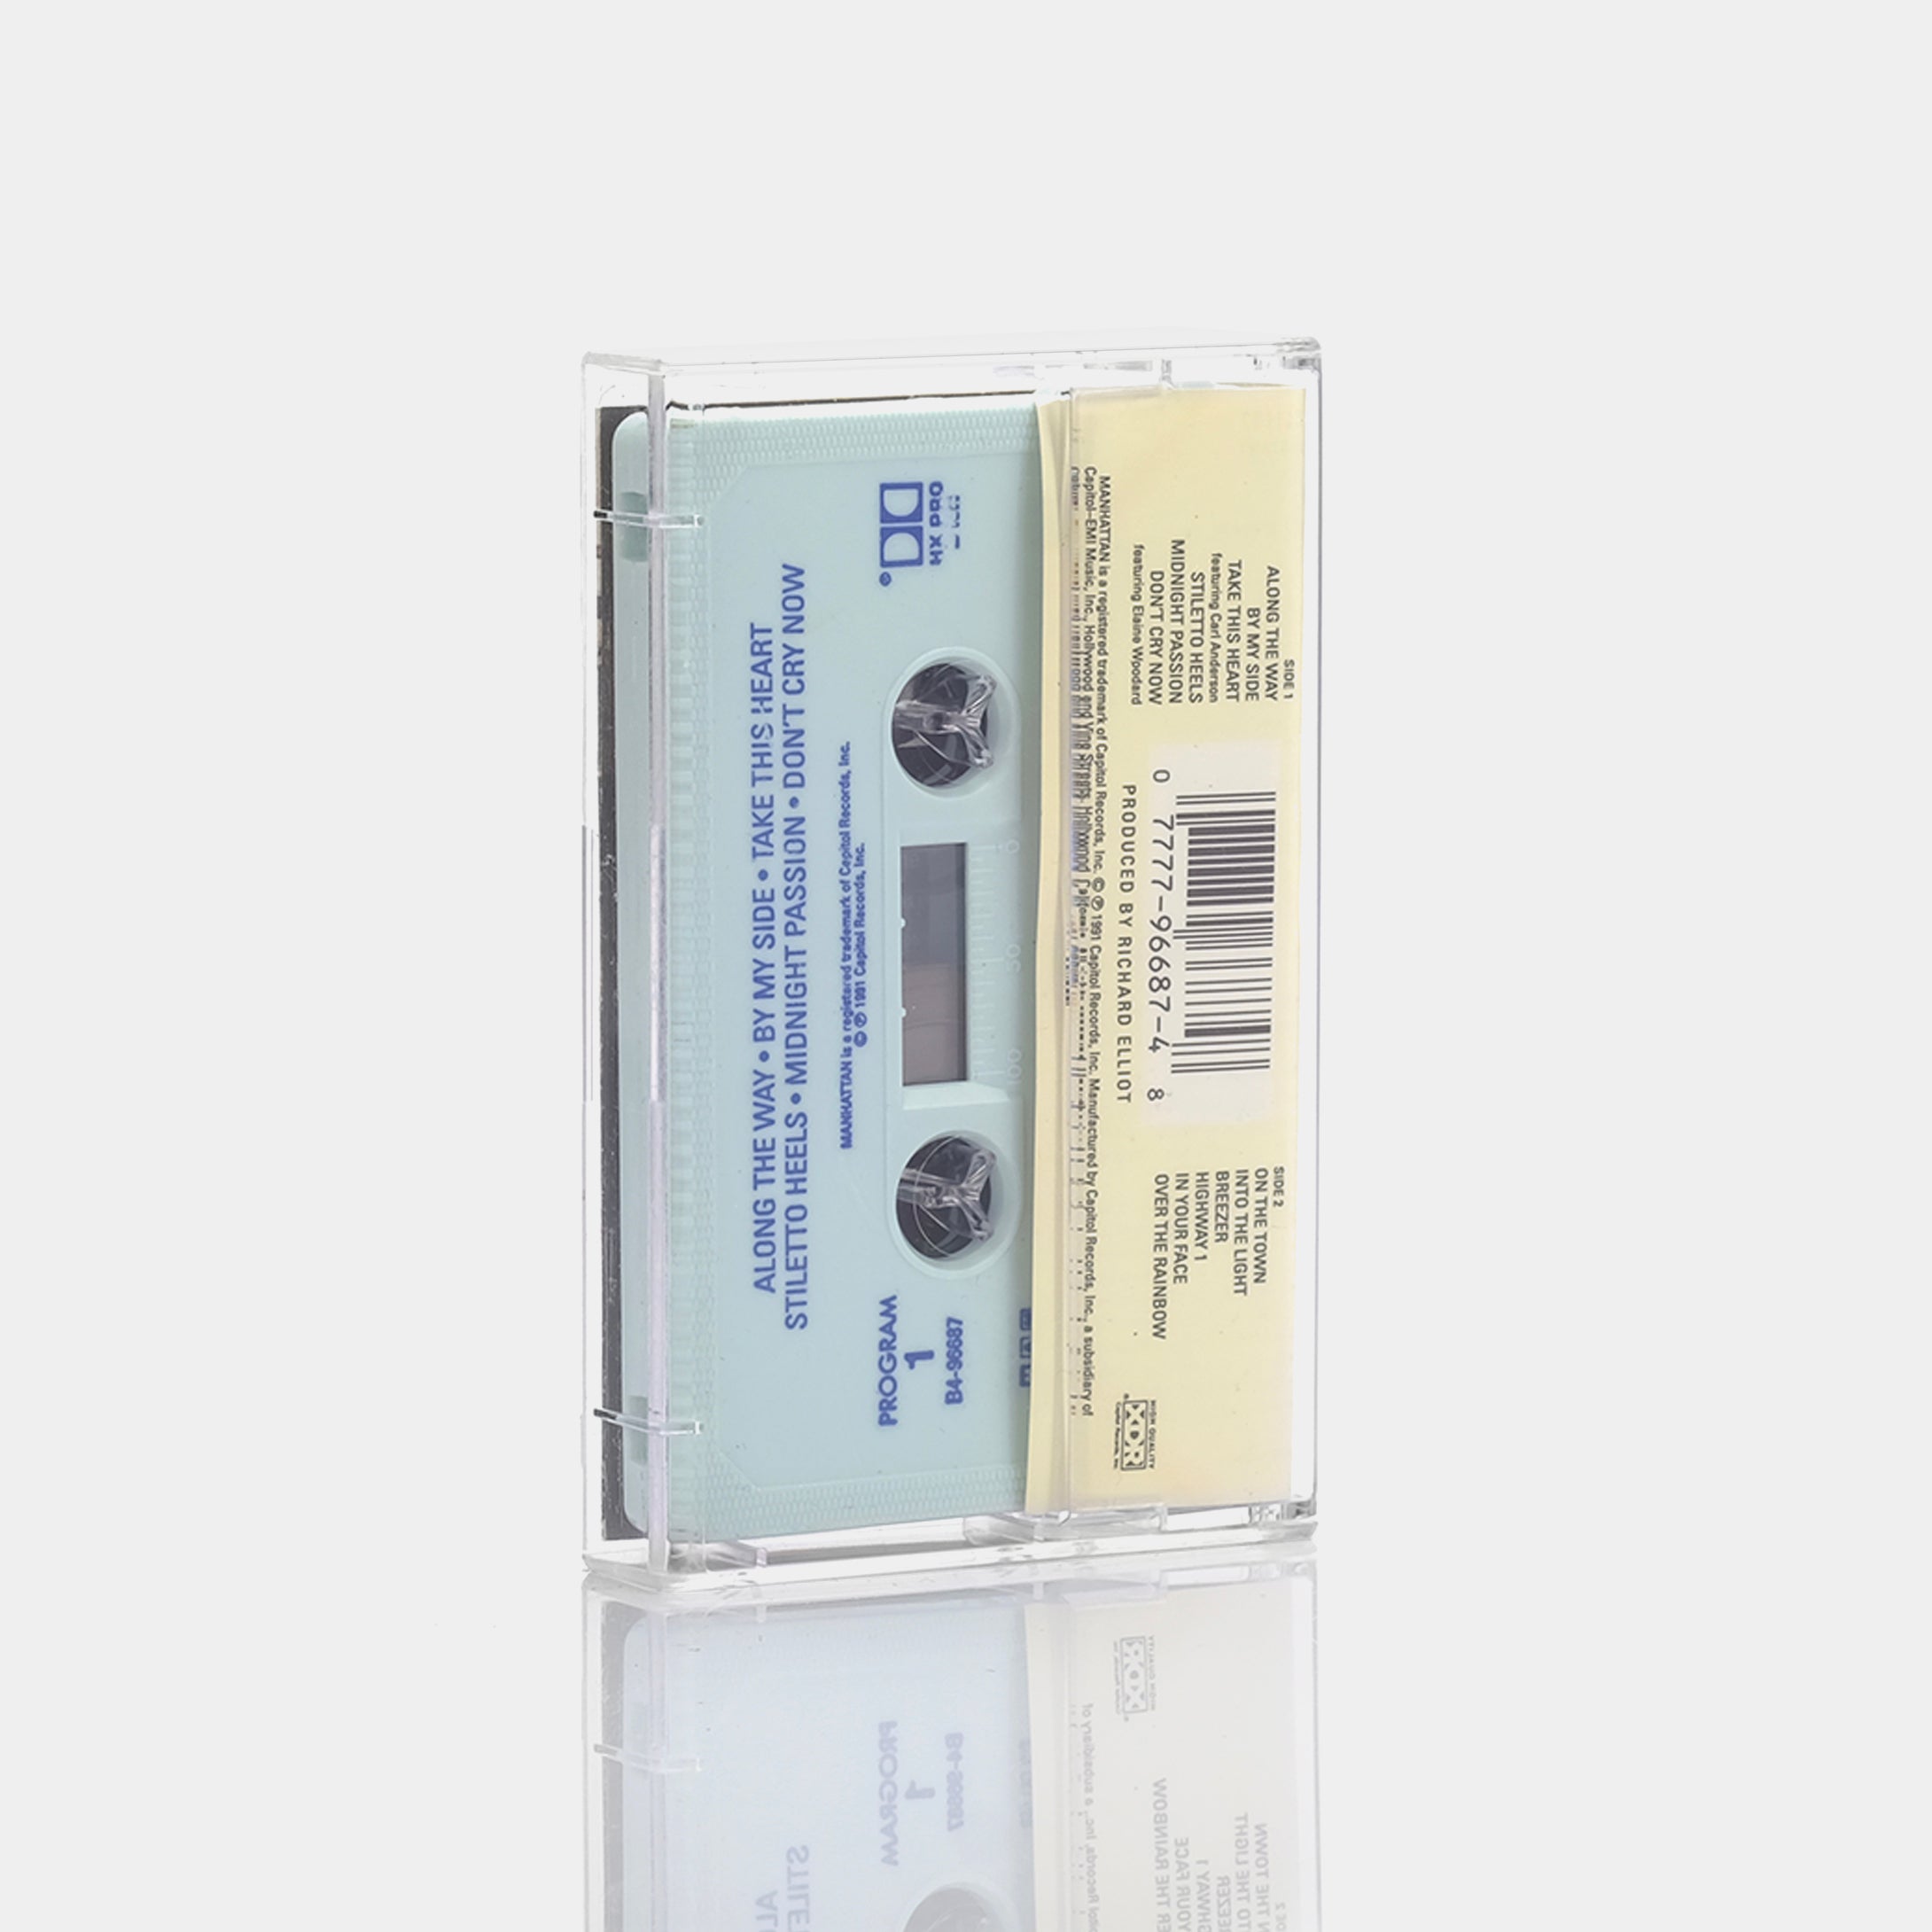 Richard Elliot - On The Town Cassette Tape